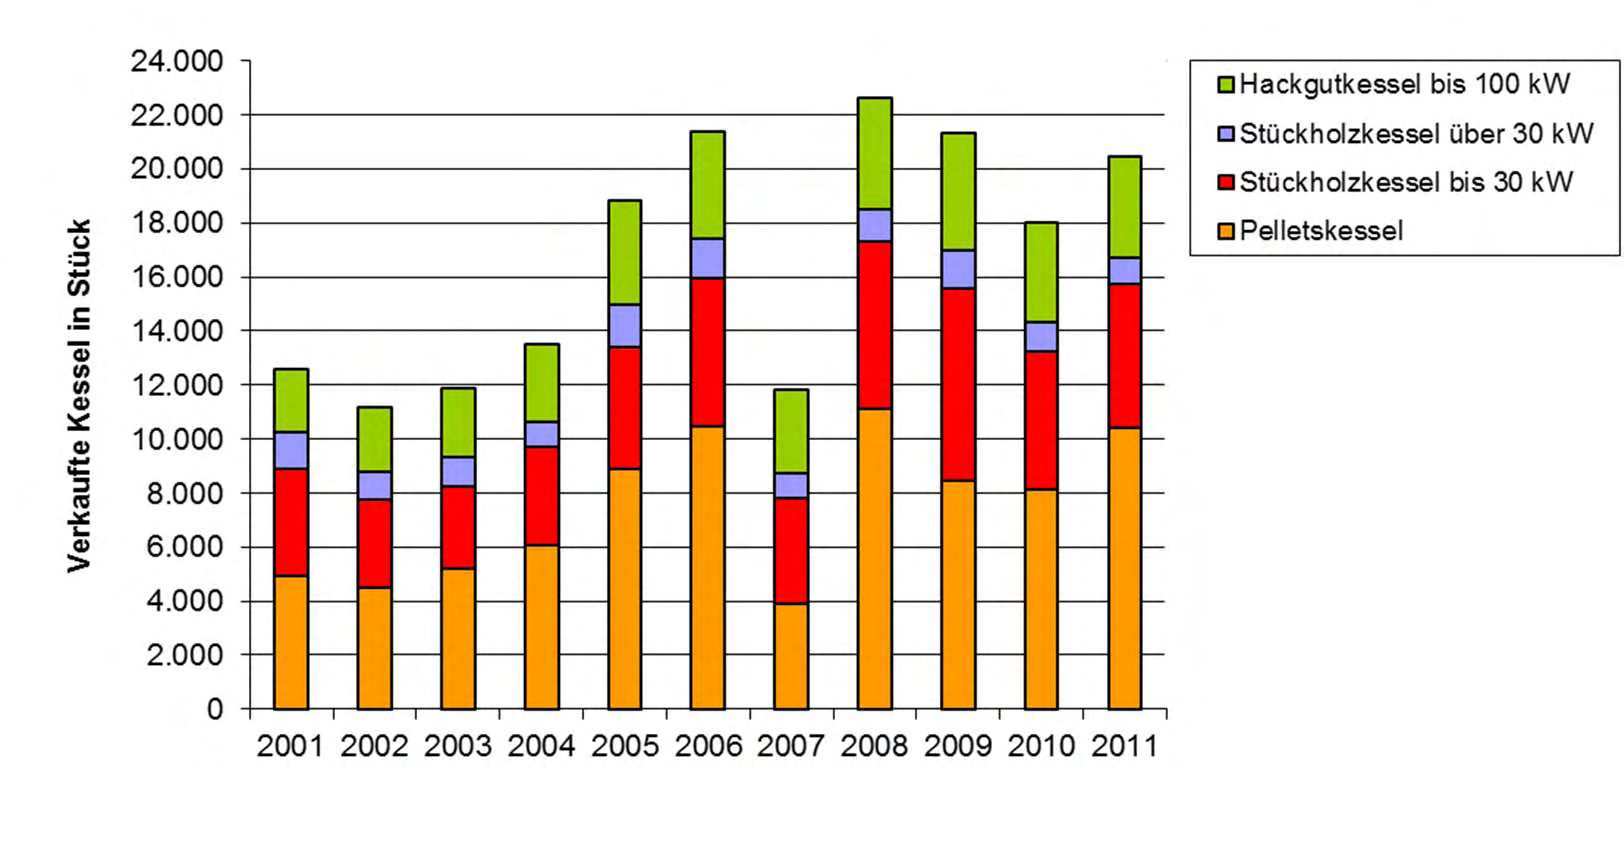 Feste Biomasse Kessel und Öfen Marktentwicklung Biomassekessel kleiner Leistung 2011 2011 (in Bezug auf 2010): Pelletskessel: 10.400 Stk. (+28%) Stückholz >: 1.